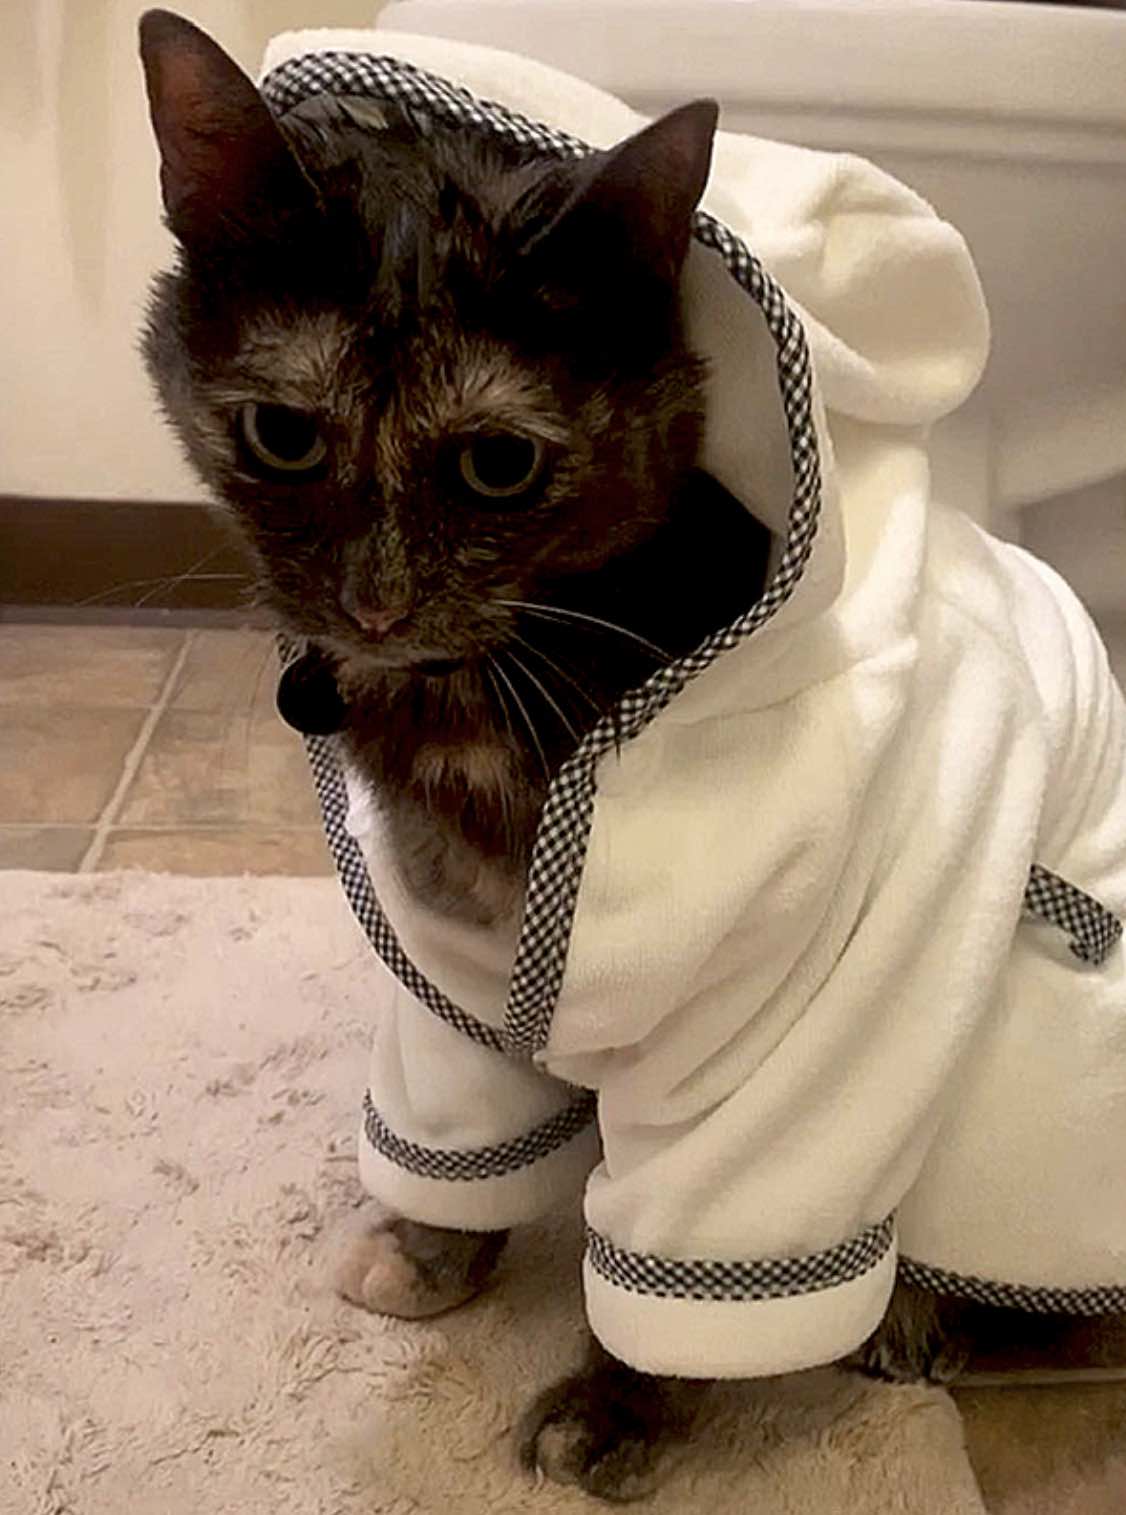 pym in bath robe